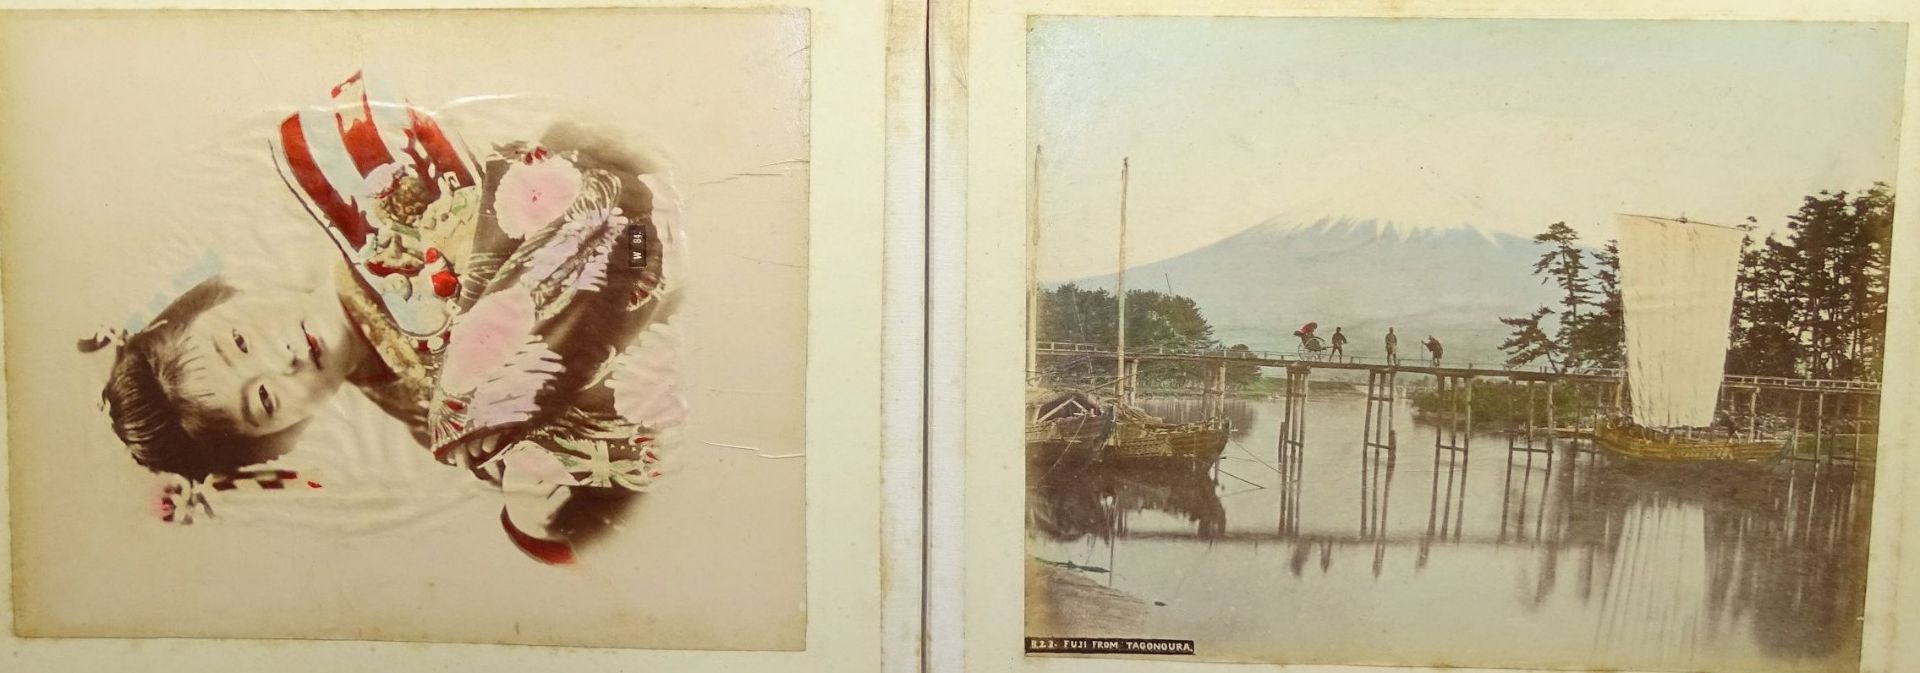 Lackalbum (27x35 cm) mit 44 grossformatigen Foto-Abzügen, Japan, eingeklebt, beschriftet, Alben - Bild 15 aus 17